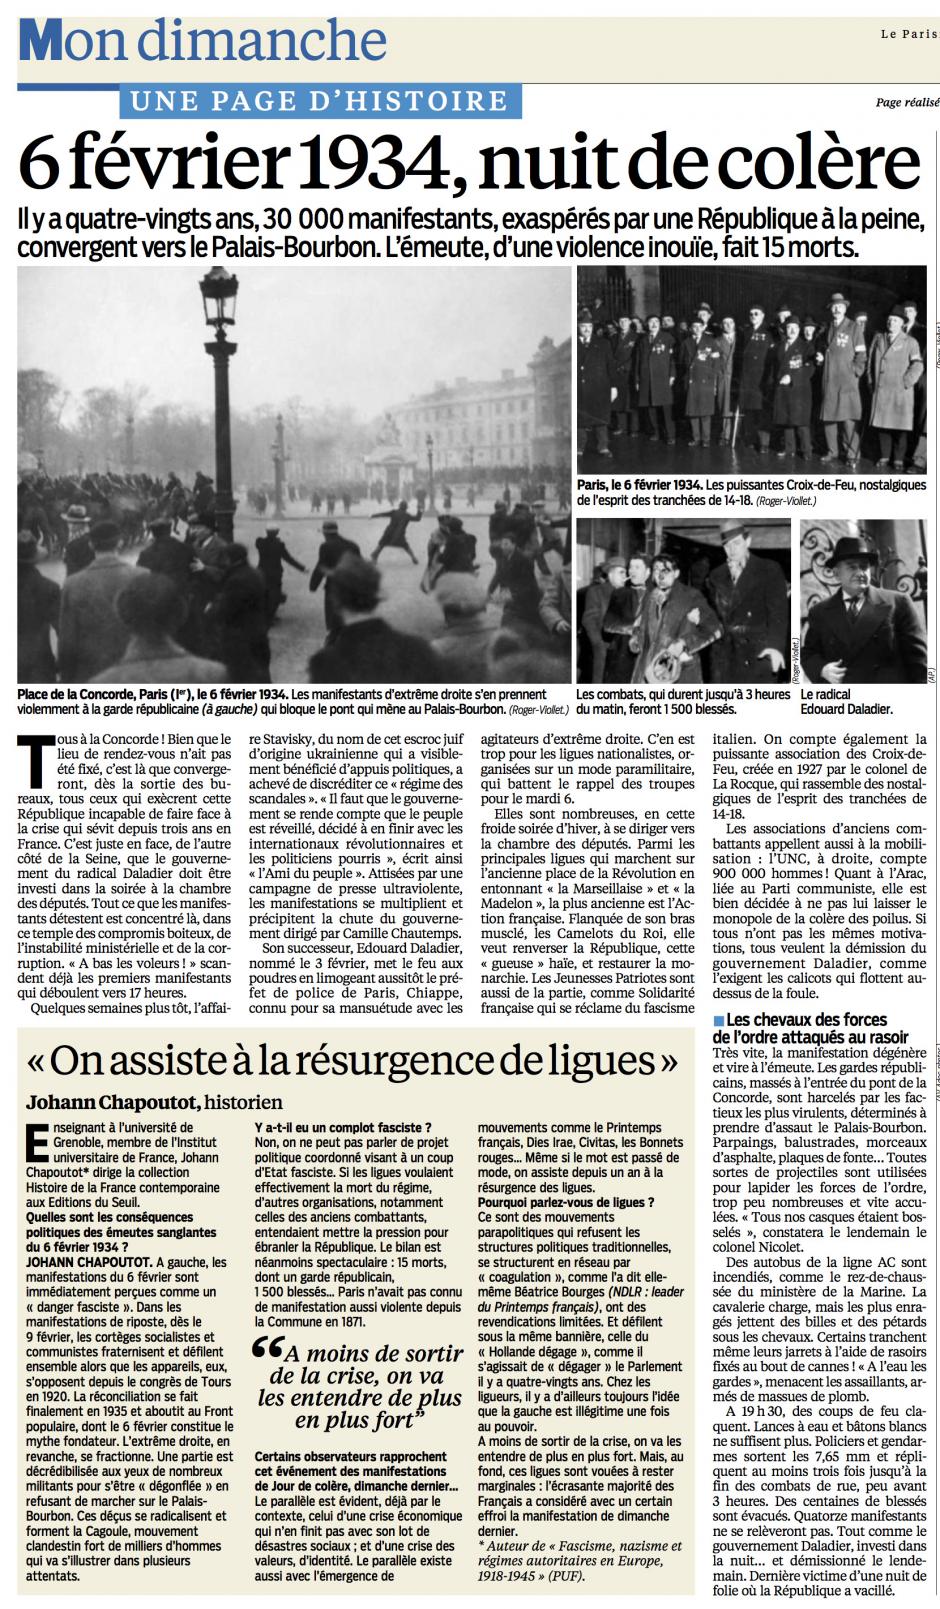 20140202-LeP-France-Une page d'histoire : 6 février 1934, nuit de colère